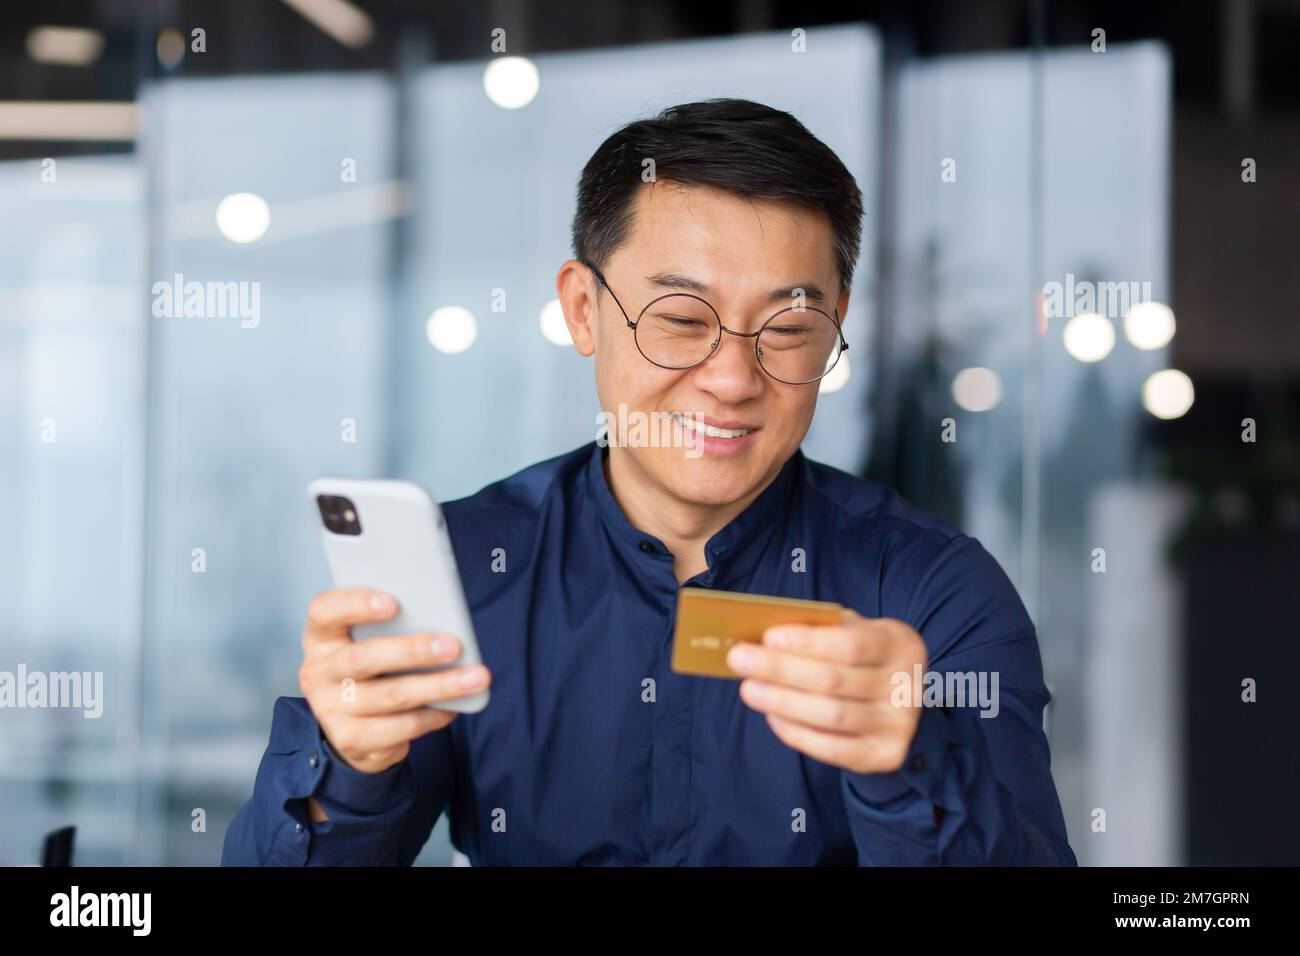 Nahaufnahme. Ein glücklicher junger Asiate sitzt im Büro am Tisch und hält eine Kreditkarte und ein Telefon in der Hand. Online-Zahlung, Online-Shopping, Geldtransfer, Kontoüberprüfung. Stockfoto